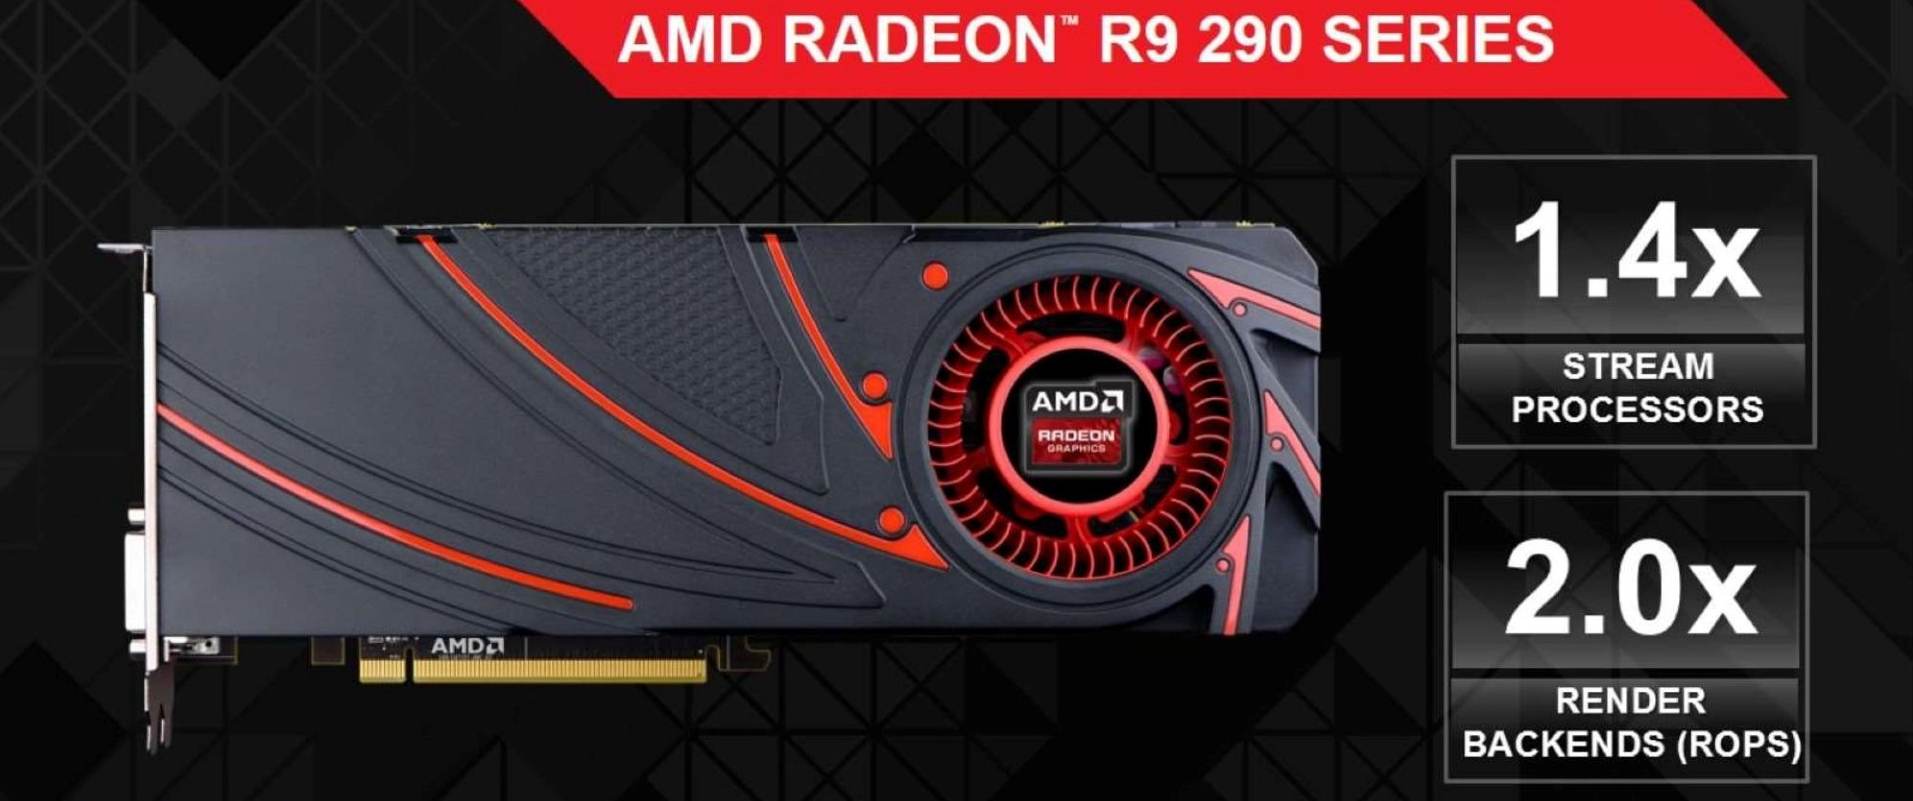 Comprar tarjeta grafica AMD Radeon R9 290 en Droitek.com